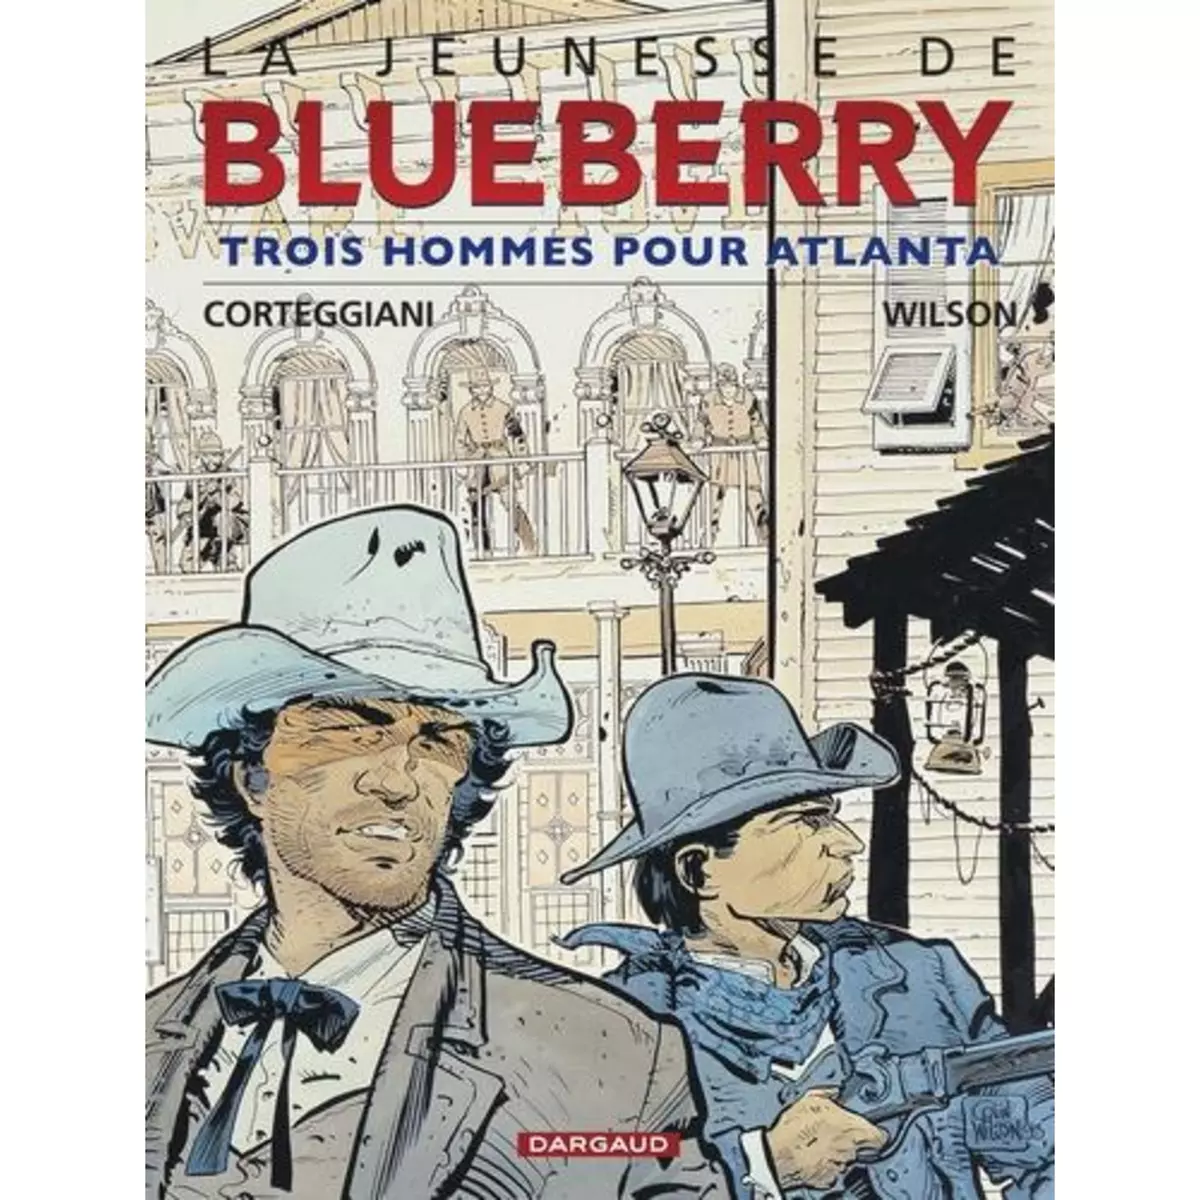  LA JEUNESSE DE BLUEBERRY TOME 8 : TROIS HOMMES POUR ATLANTA, Corteggiani François